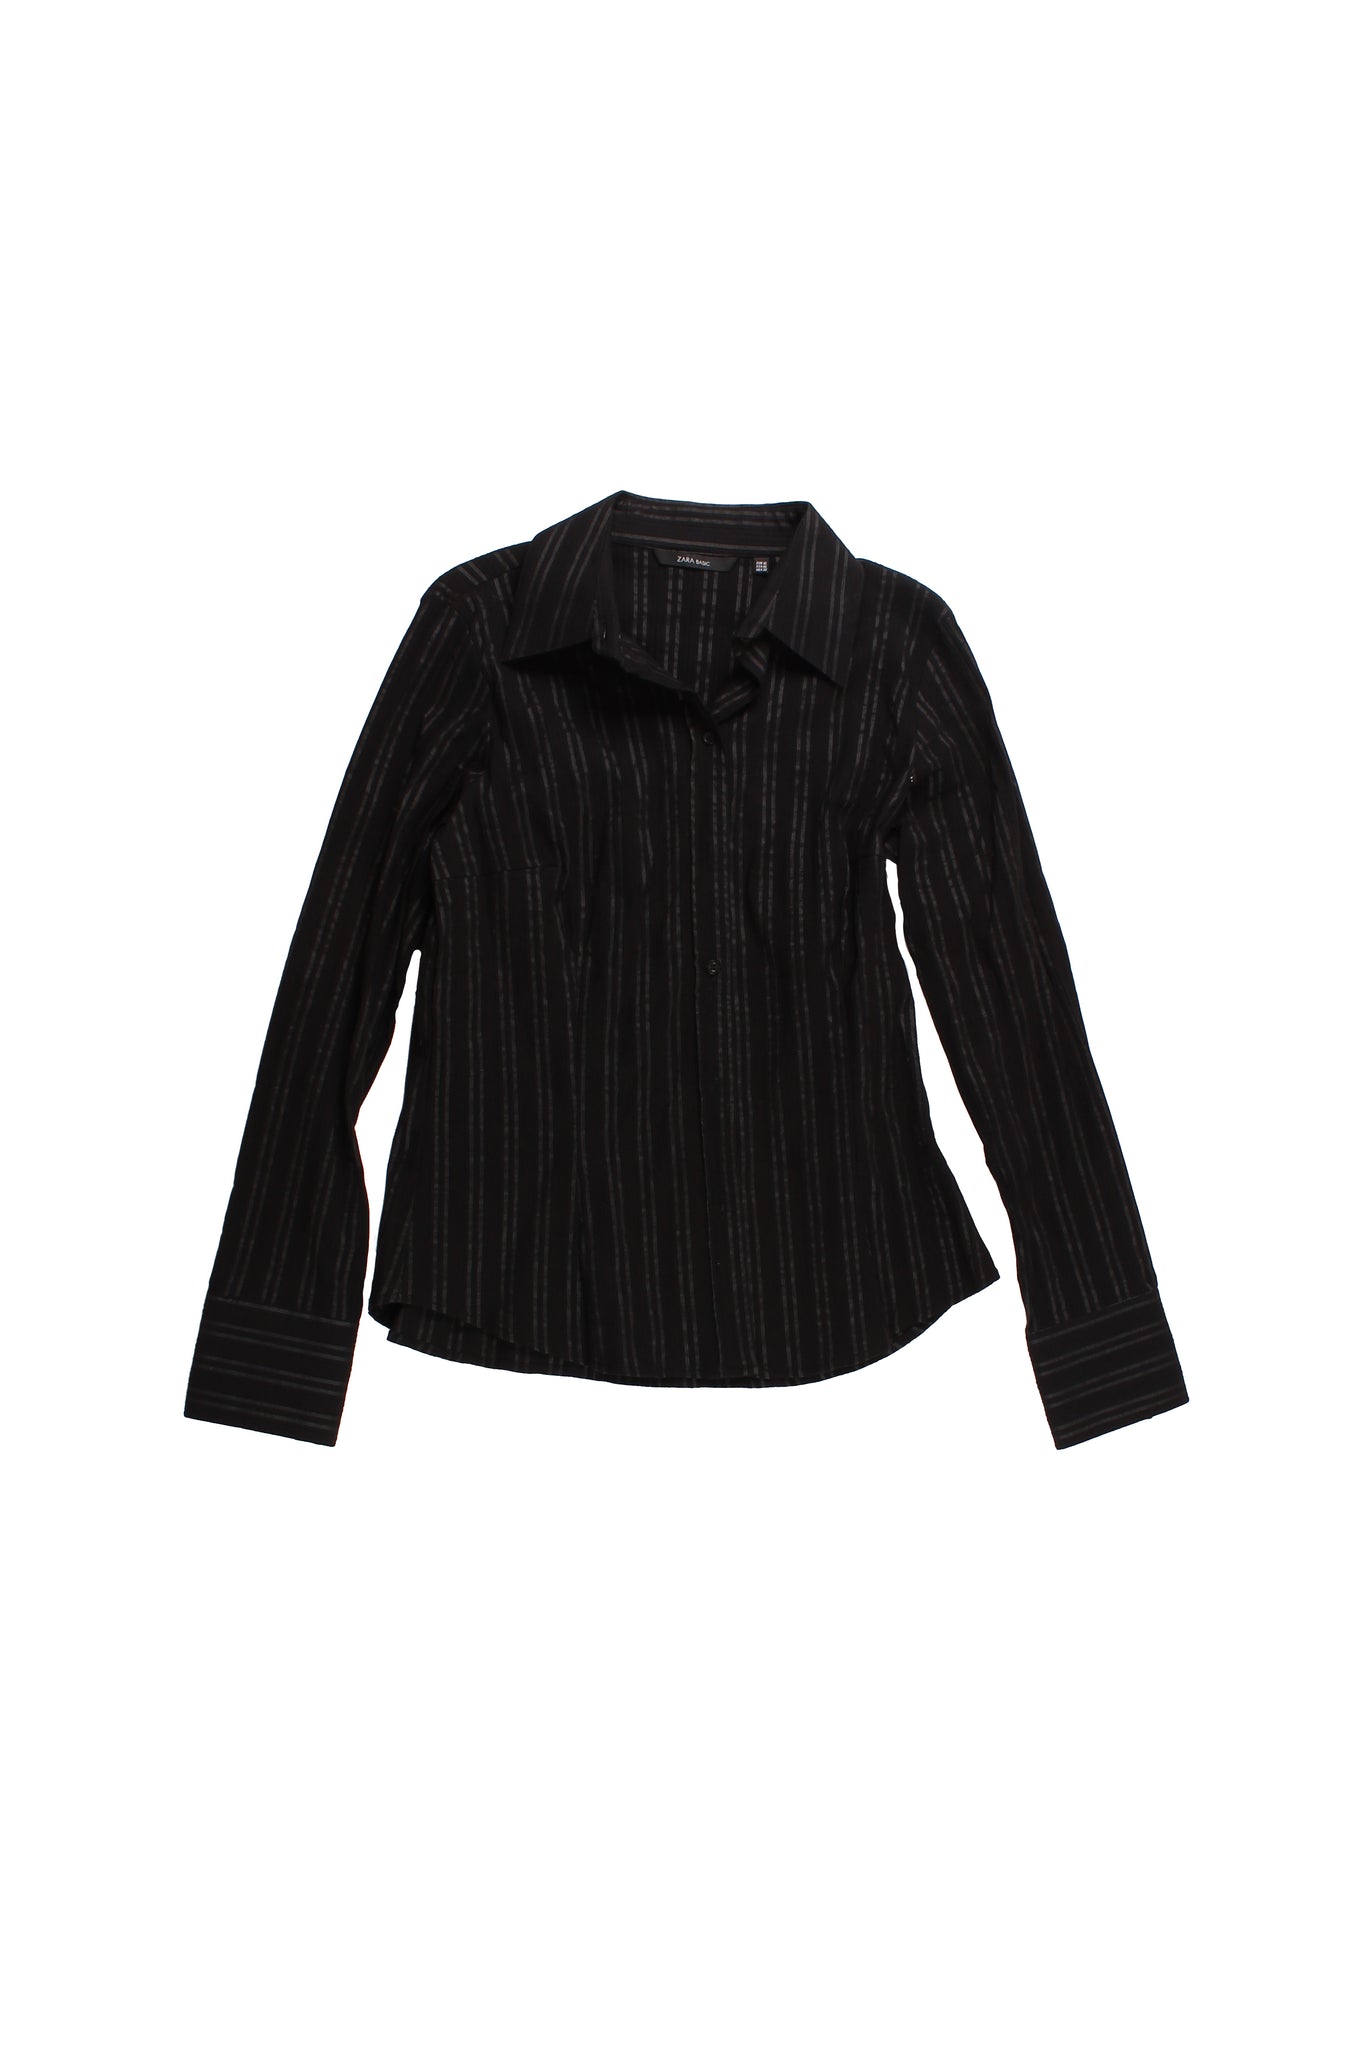 Zara - Camisa Negra Estampado Lineas